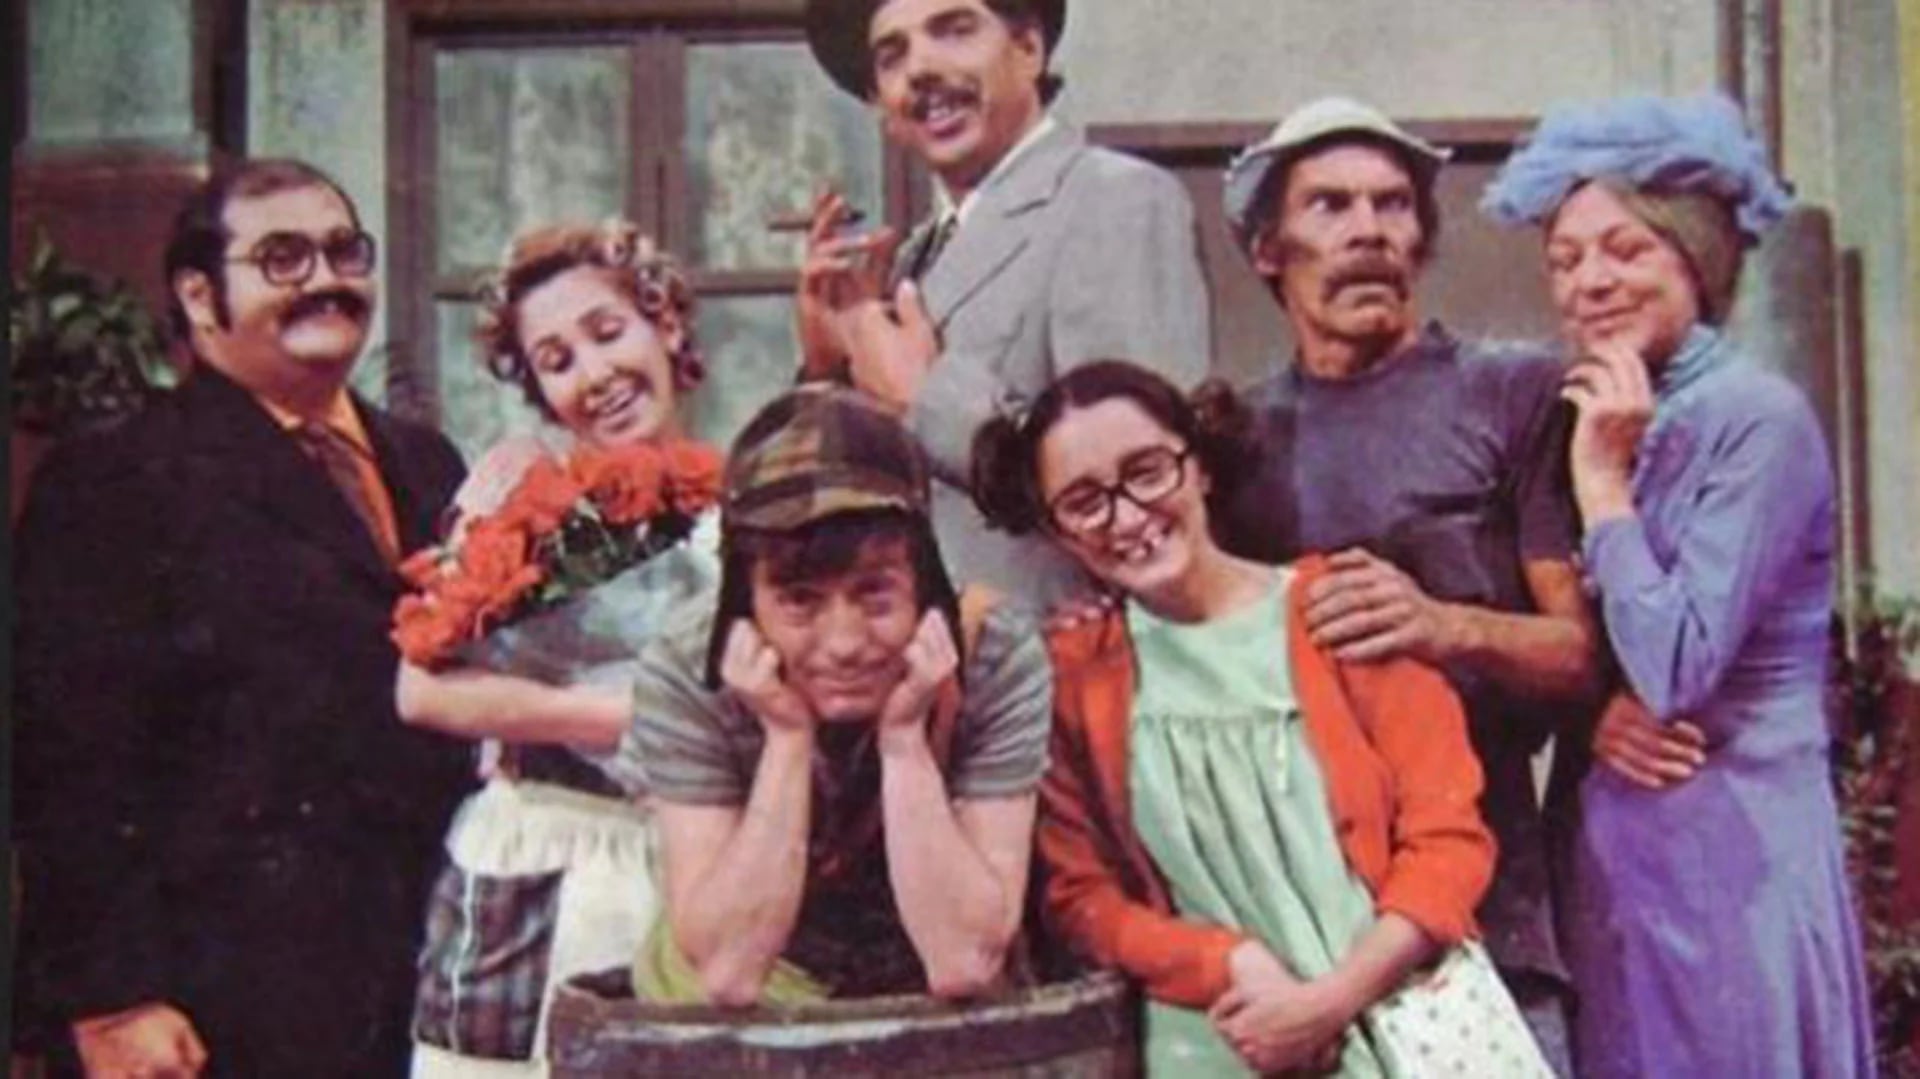 Para la nostalgia: El Señor Barriga, Doña Florinda, El Profesor Jirafales, La Chilindrina, La Bruja del 71 y El Chavo del 8, en la vecindad más famosa